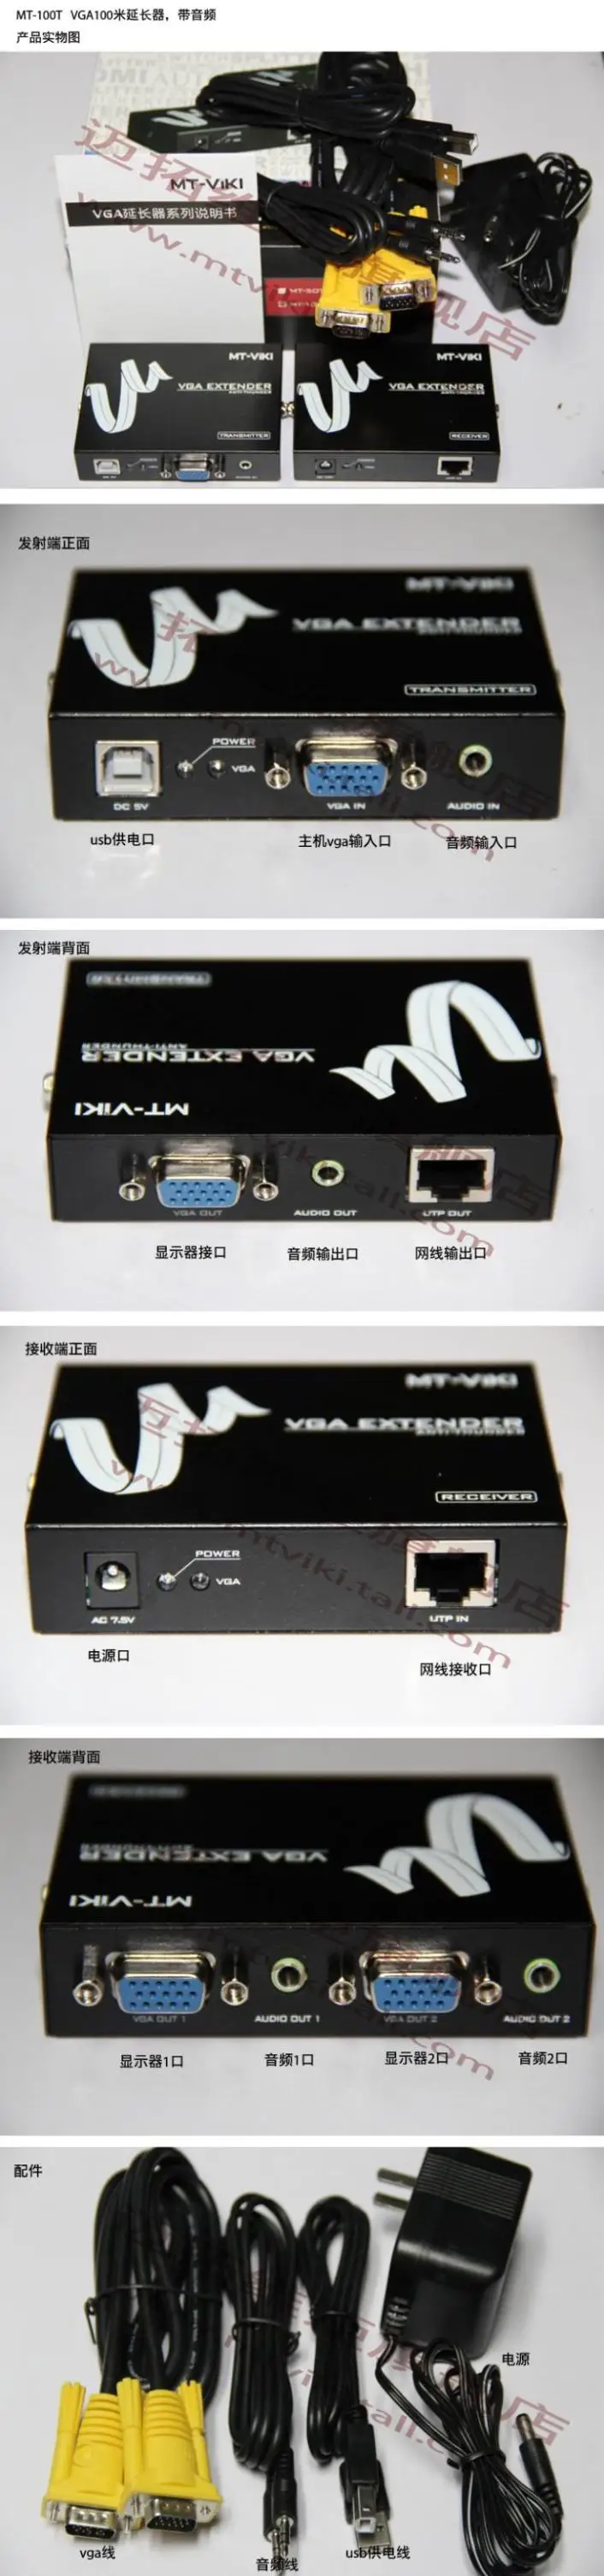 Vga-удлинитель VGA+ усилитель аудио сигнала расширяется до 100 м по RJ45